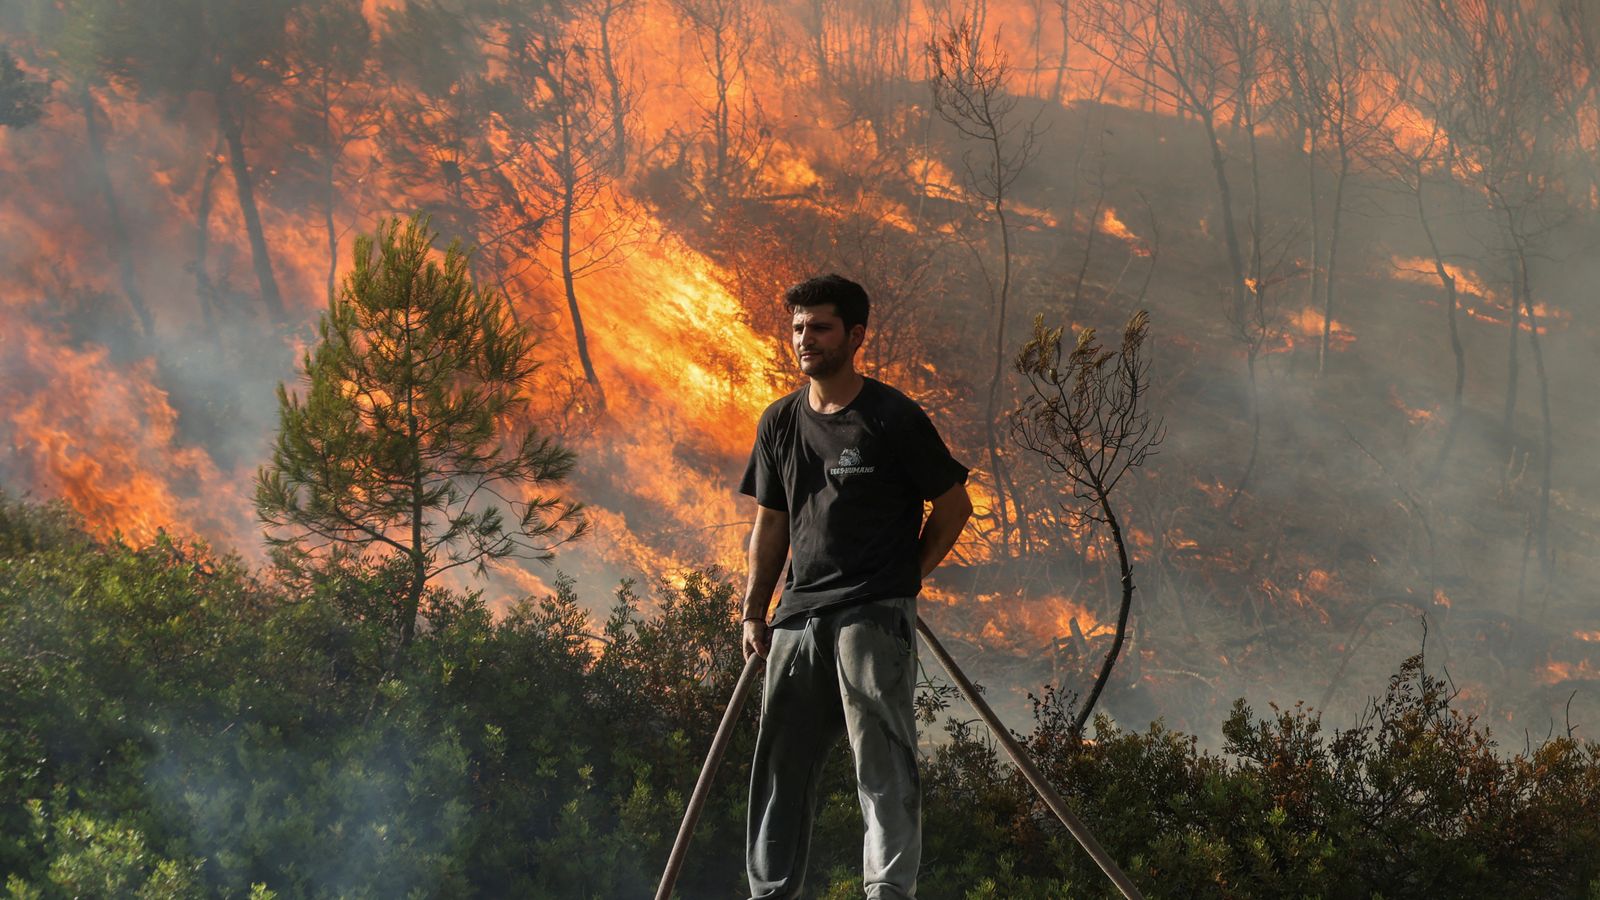 Reisender berichtet von „erschreckenden“ Szenen auf der griechischen Insel, während Premierminister vor weiteren Buschbränden in diesem Sommer warnt |  Weltnachrichten